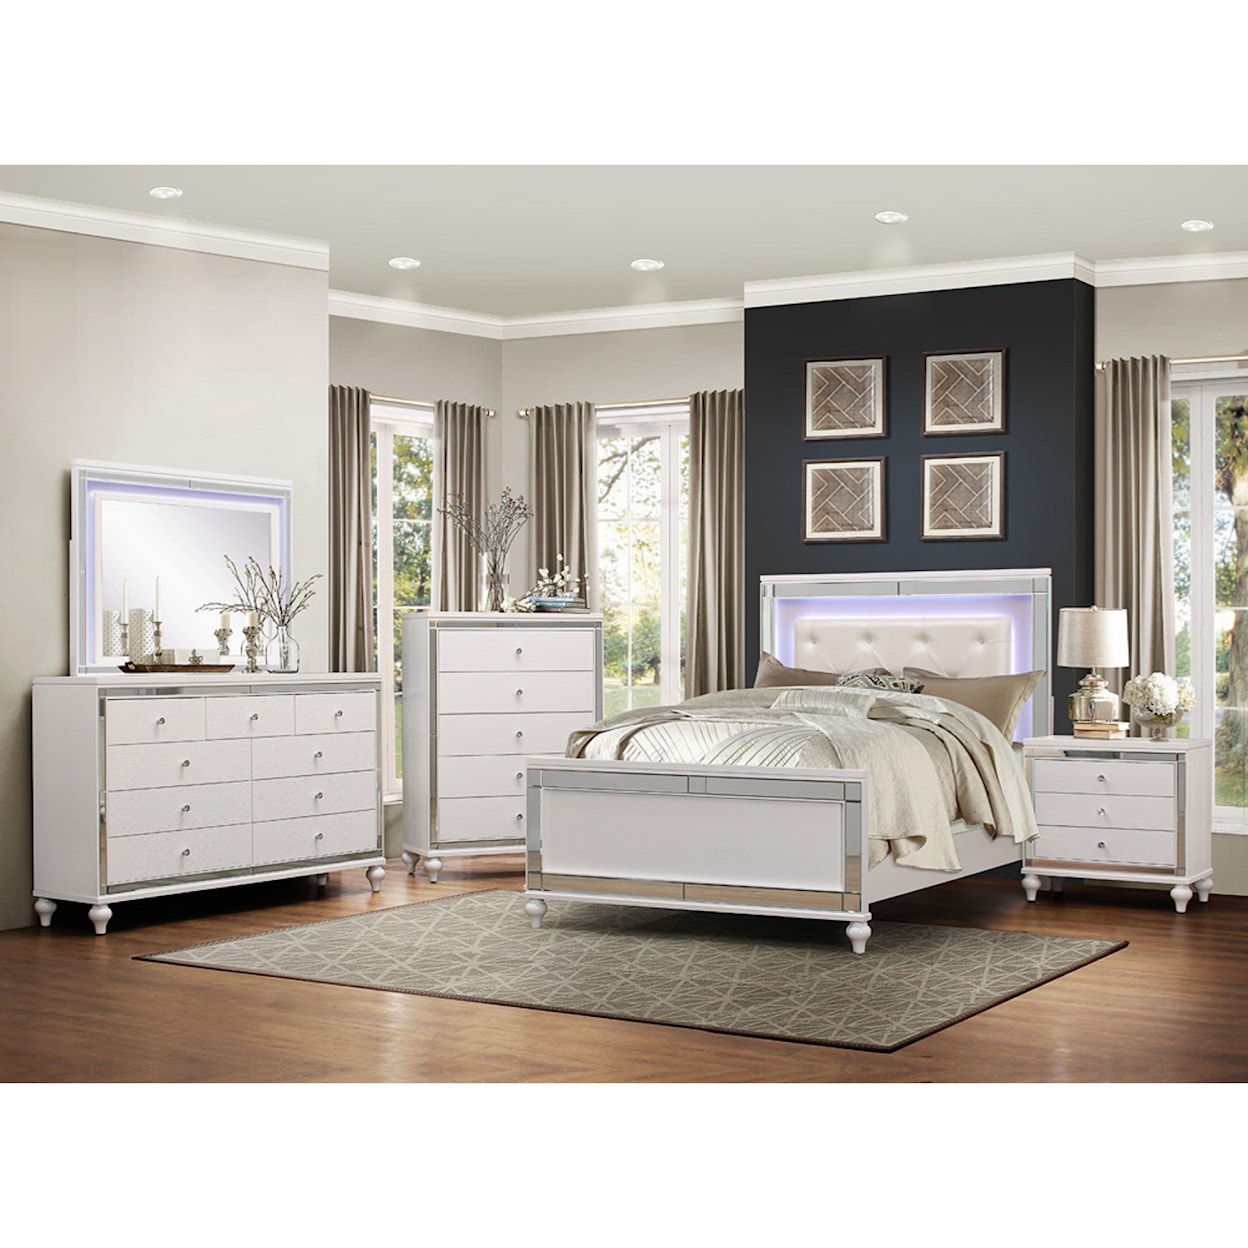 Homelegance Furniture Alonza Cal King Lit Bedroom Group